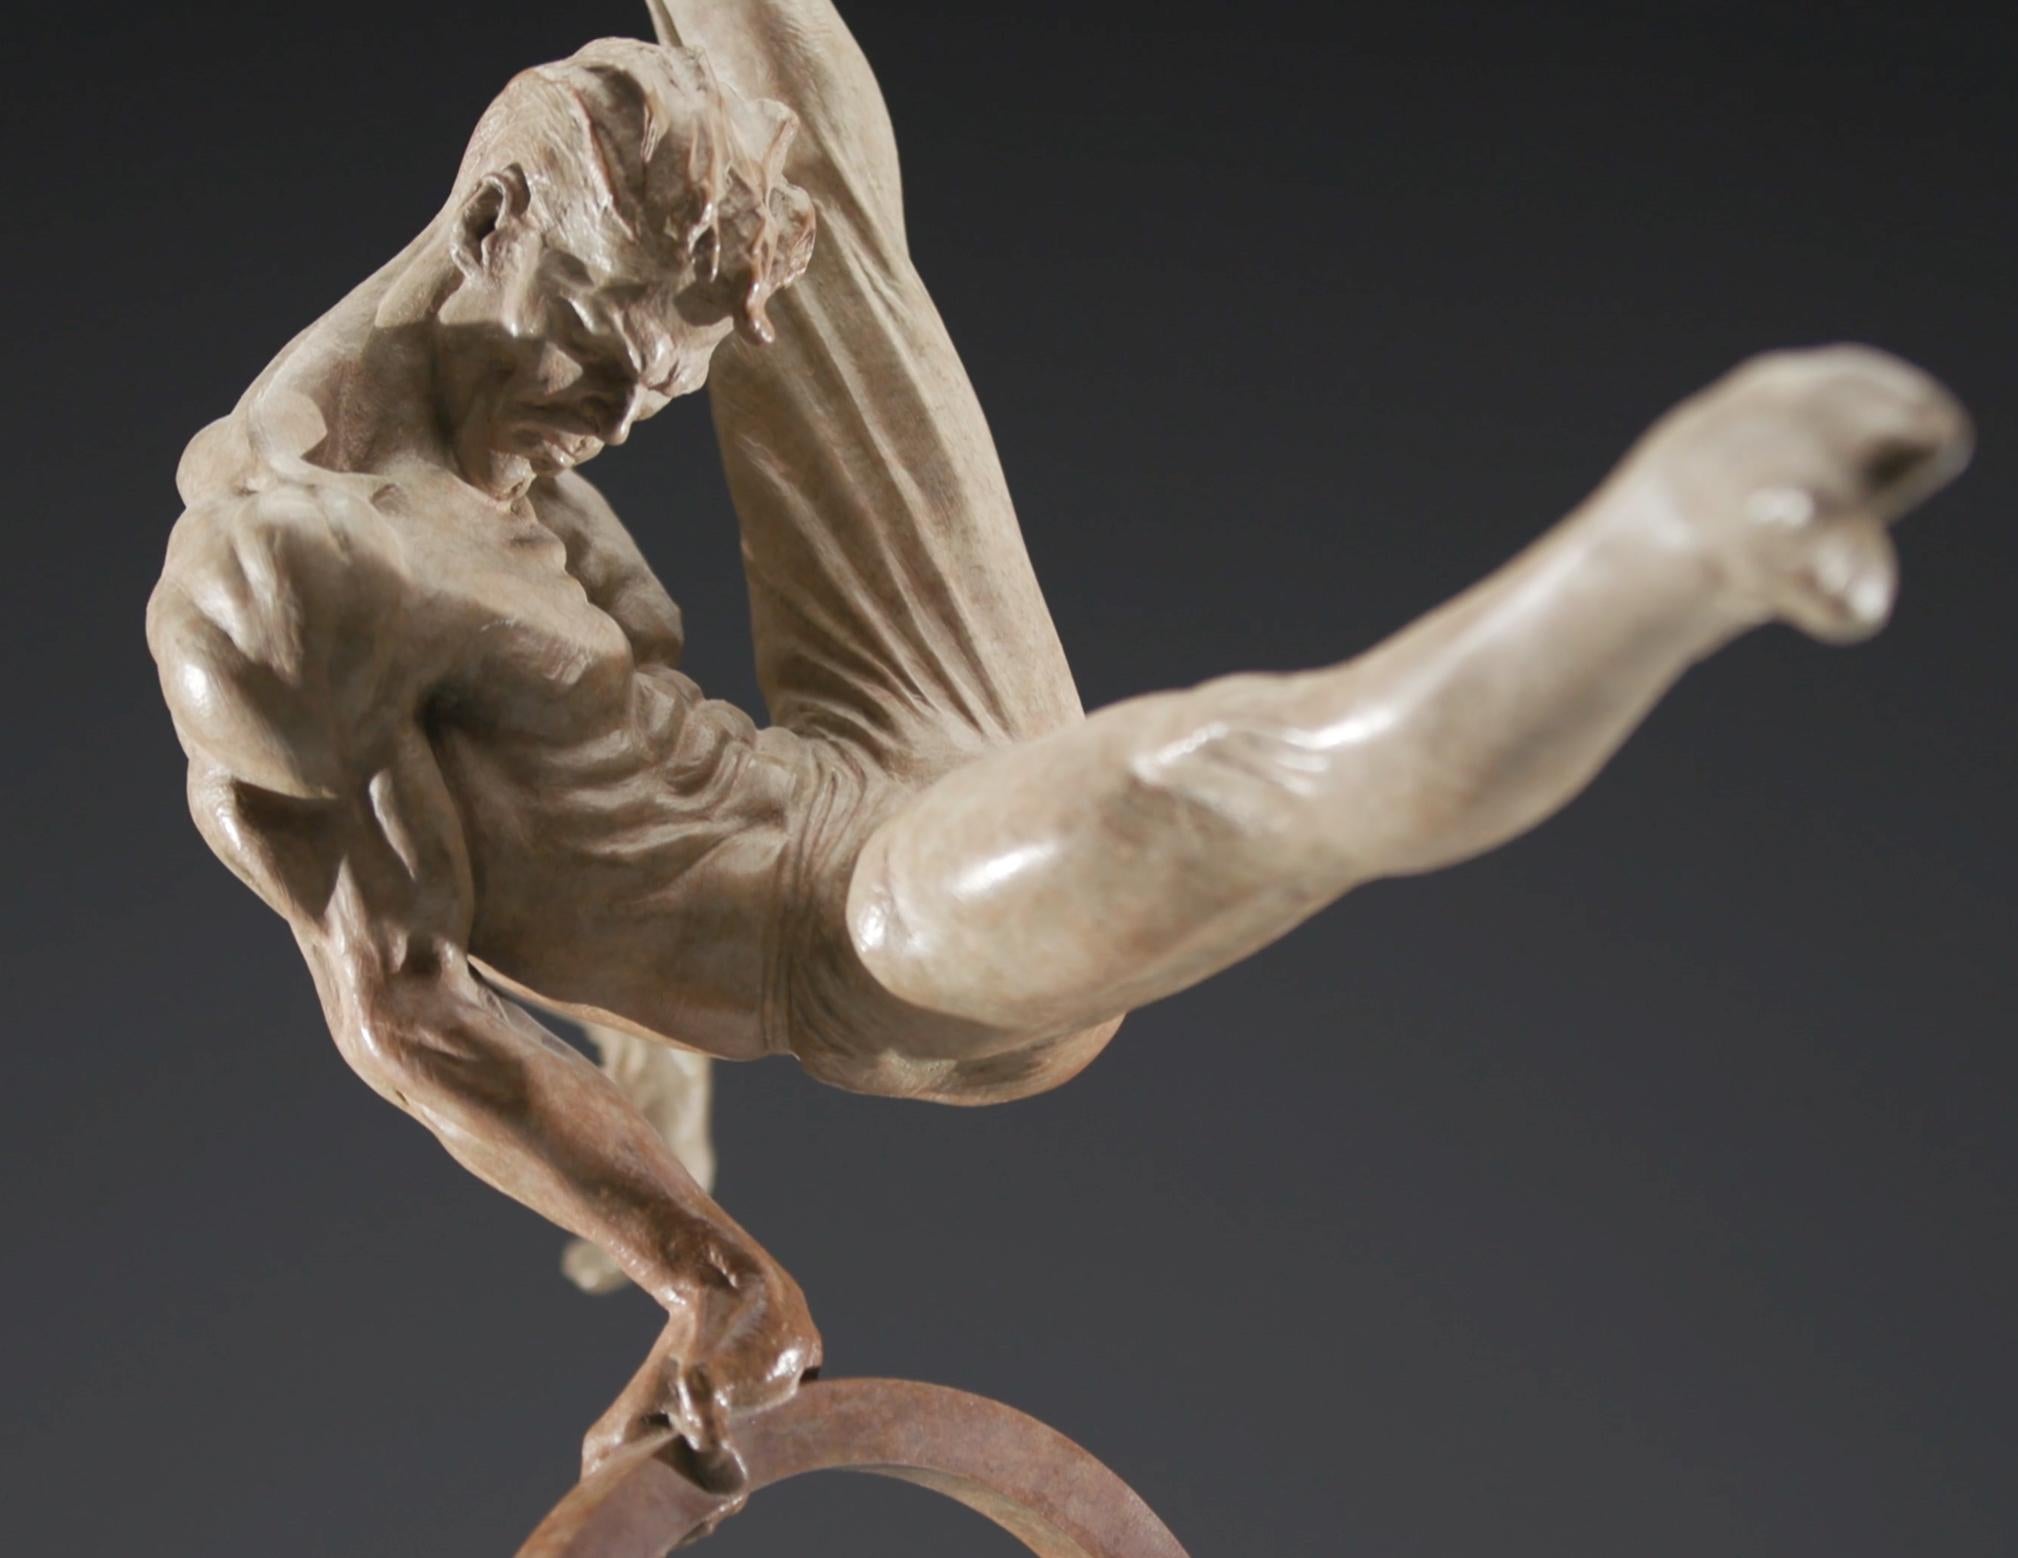 Turnerin, Achtes Leben – Sculpture von Richard MacDonald